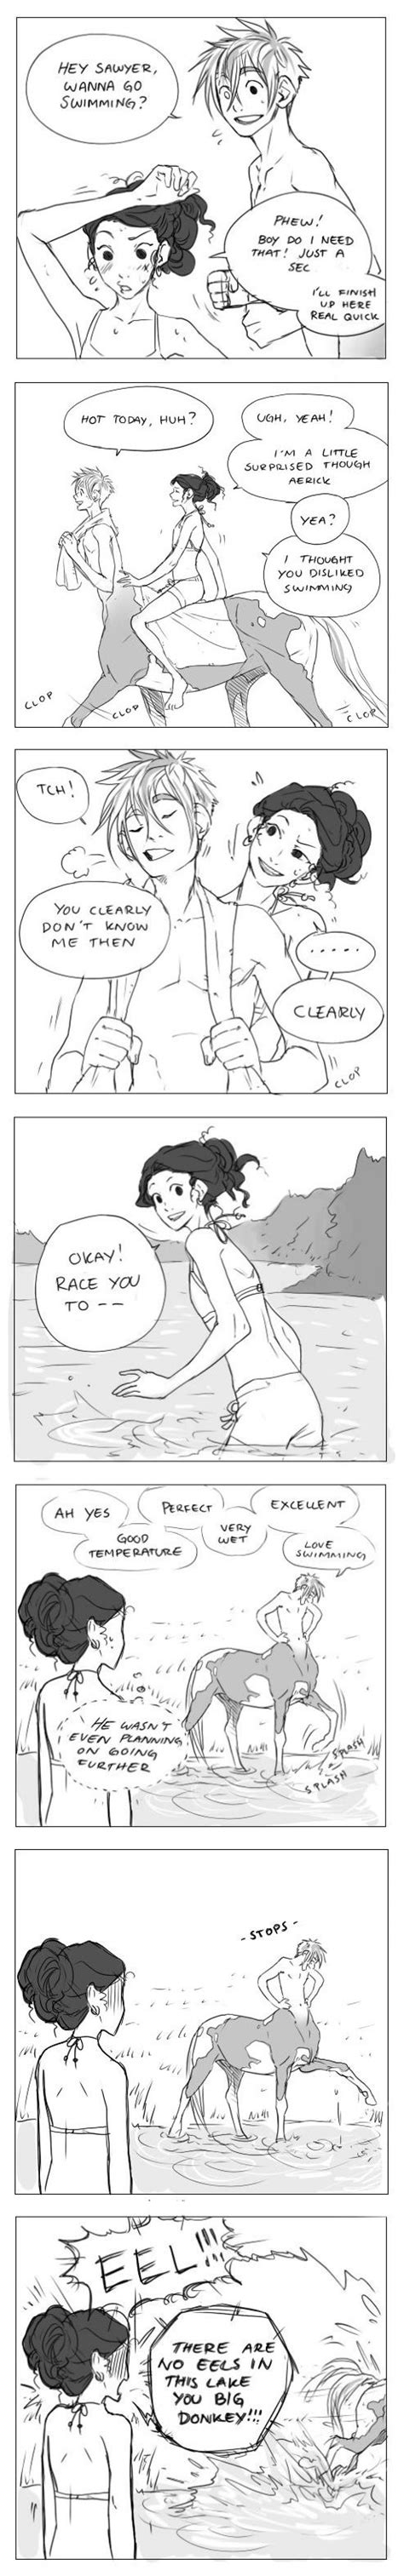 hubedihubbe swimming comic cute comics comics story